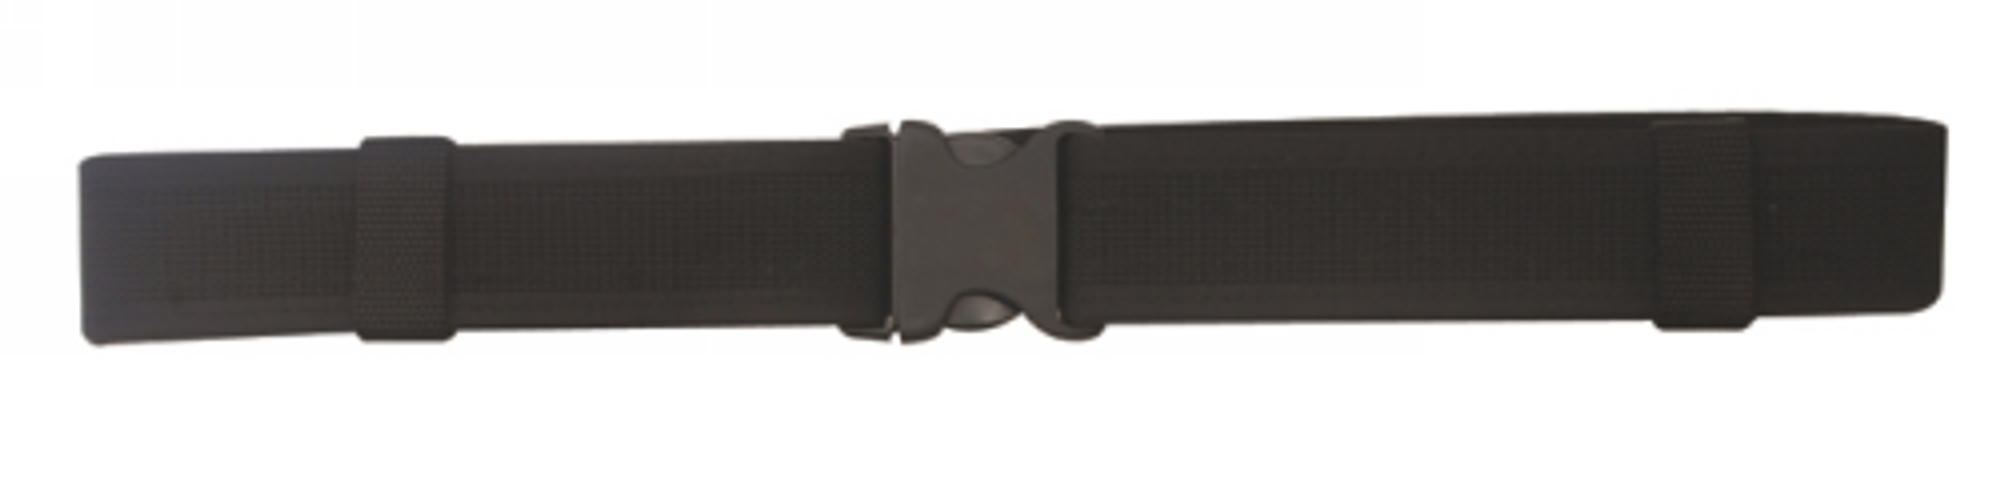 Duty Belt - KRTSP-4112007